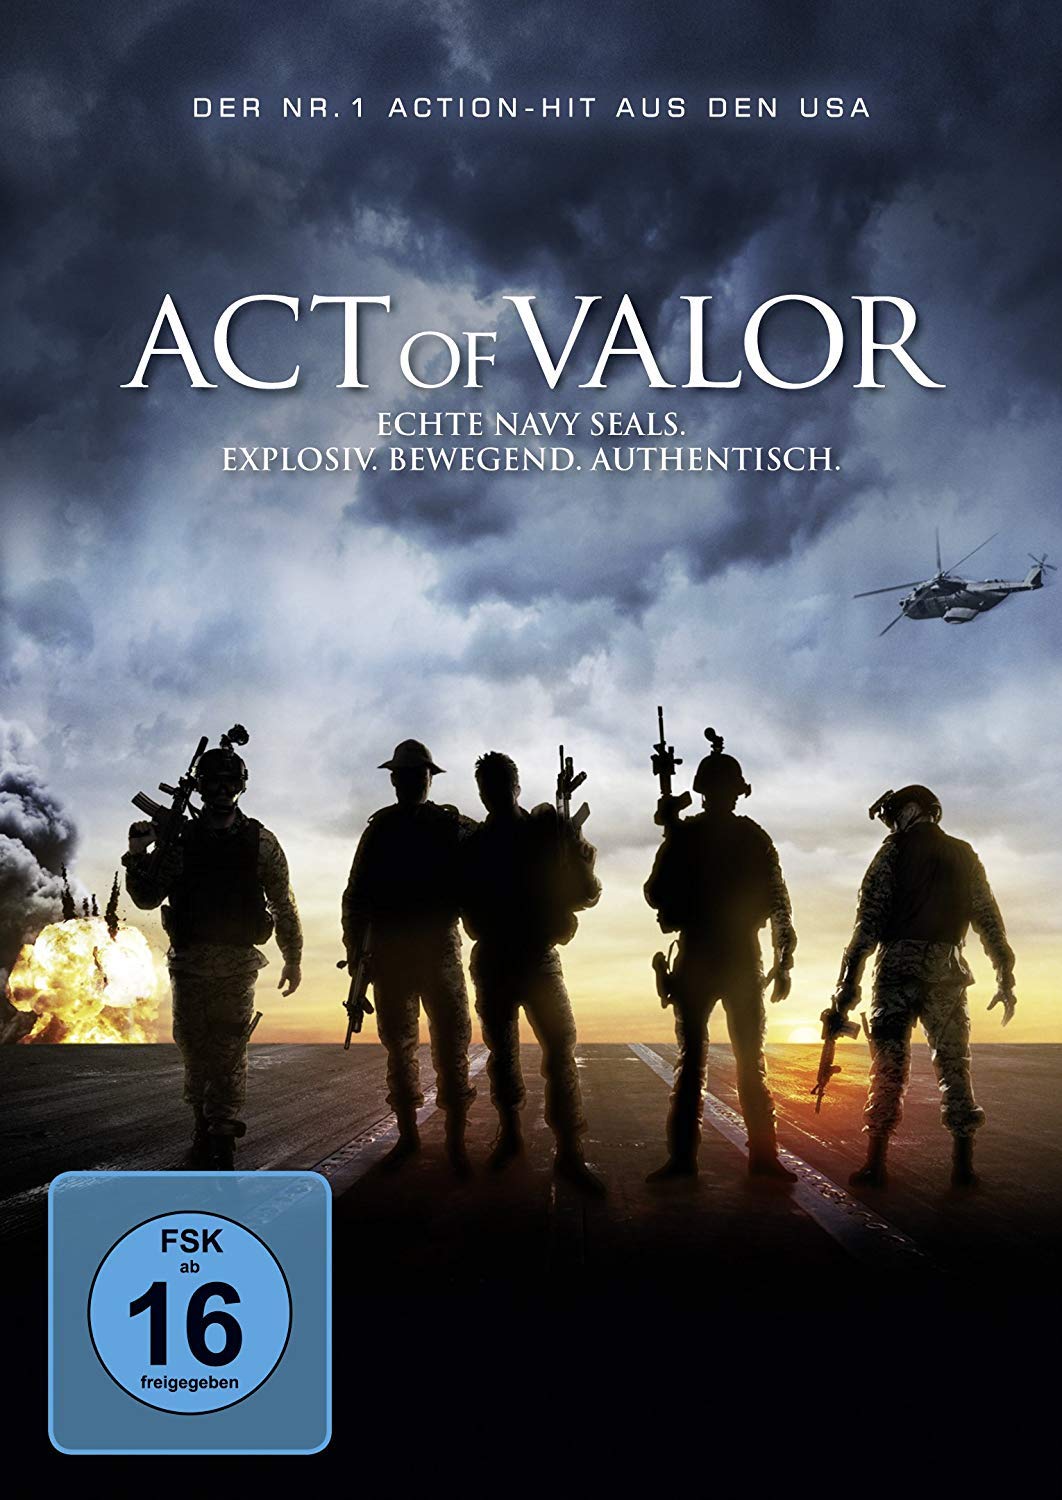 Act of Valor (gespielt von echten Navy SEALs)